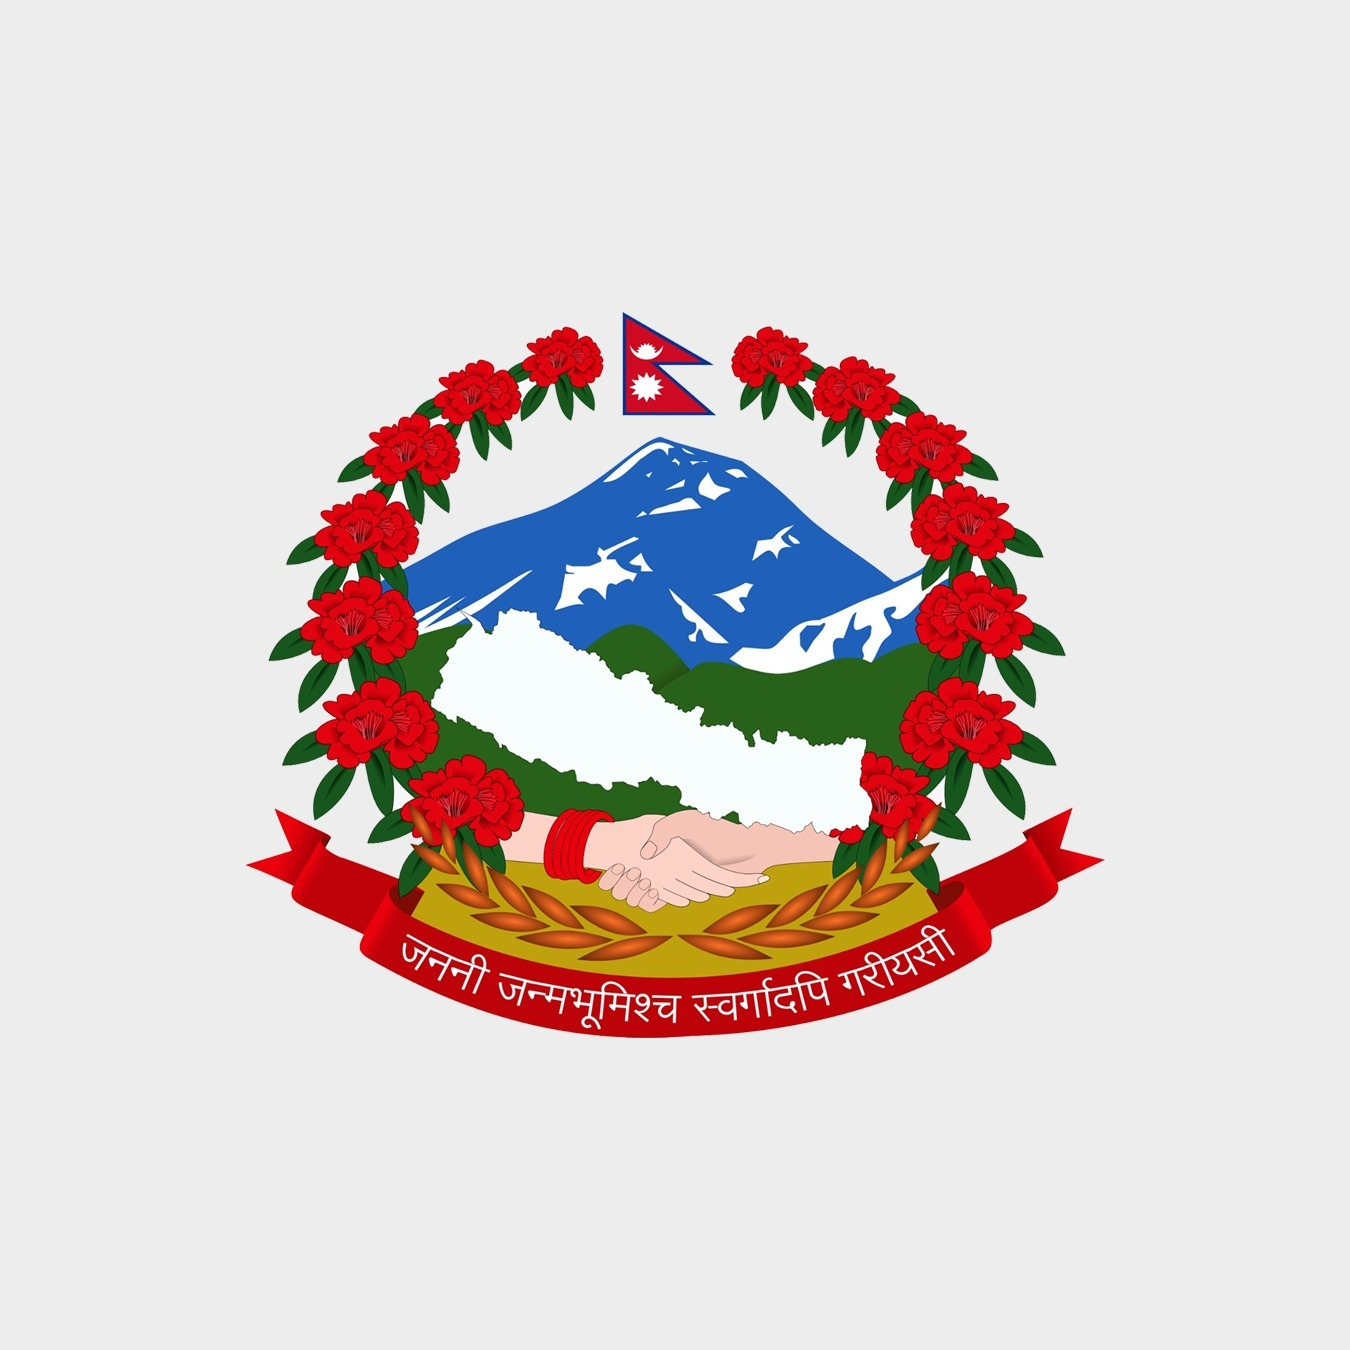 नेपाल पारवहन तथा गोदाम व्यवस्था कम्पनी लिमिटेडको रिक्त विज्ञ सञ्चालक समिति सदस्य नियुक्तिका लागि दरखास्त आव्हान सम्बन्धी सूचना । - img